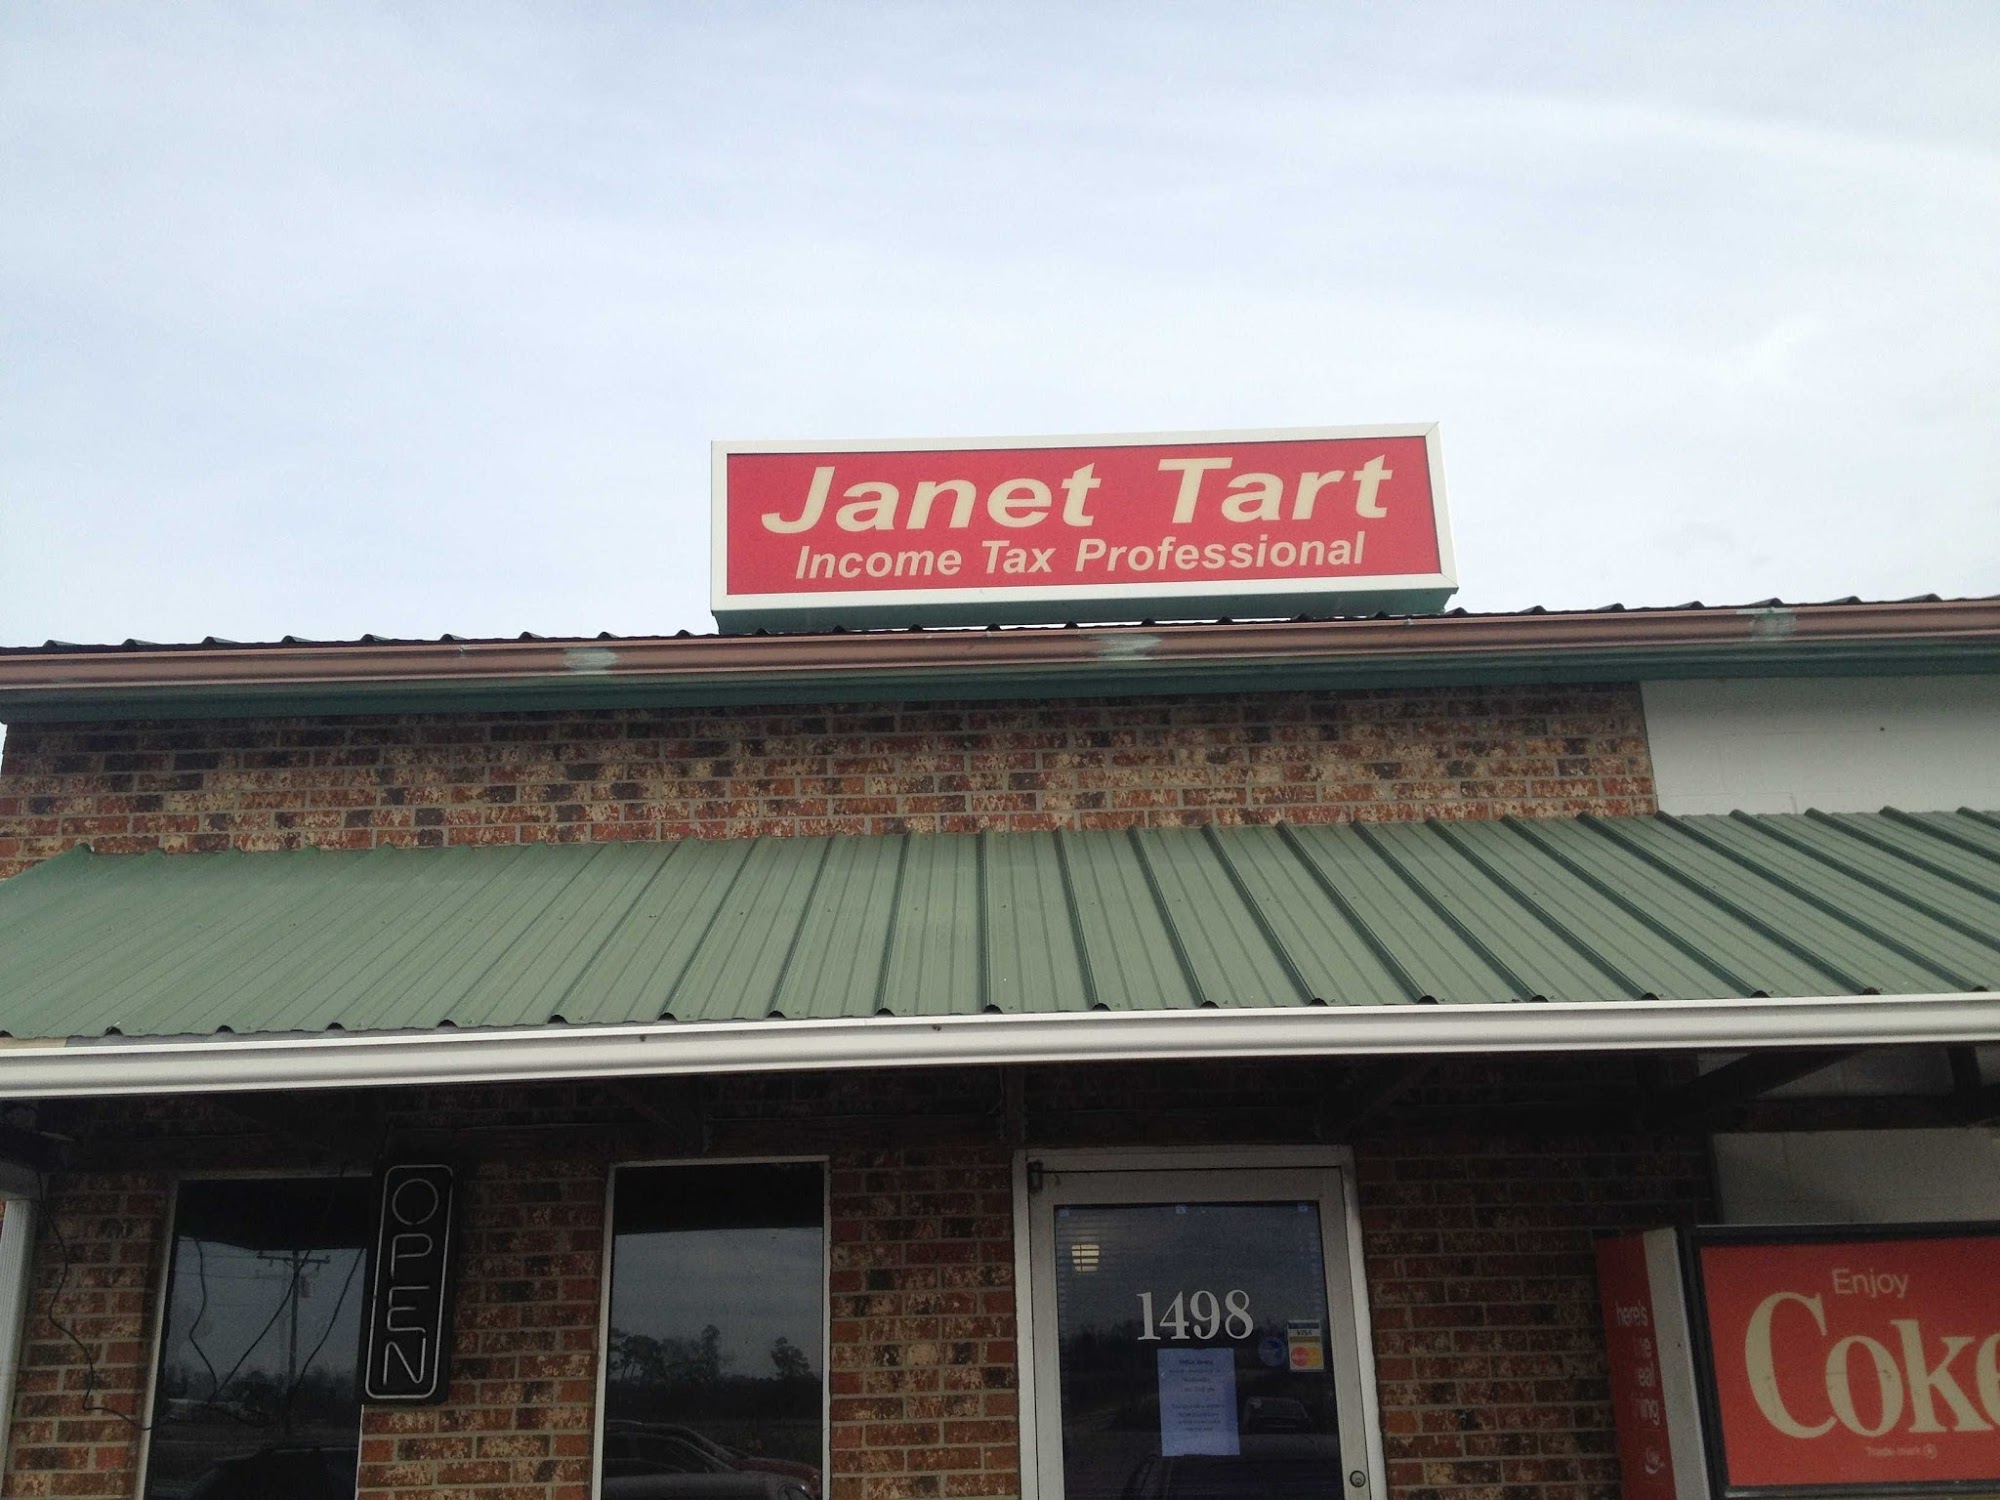 Janet Tart's Tax Service